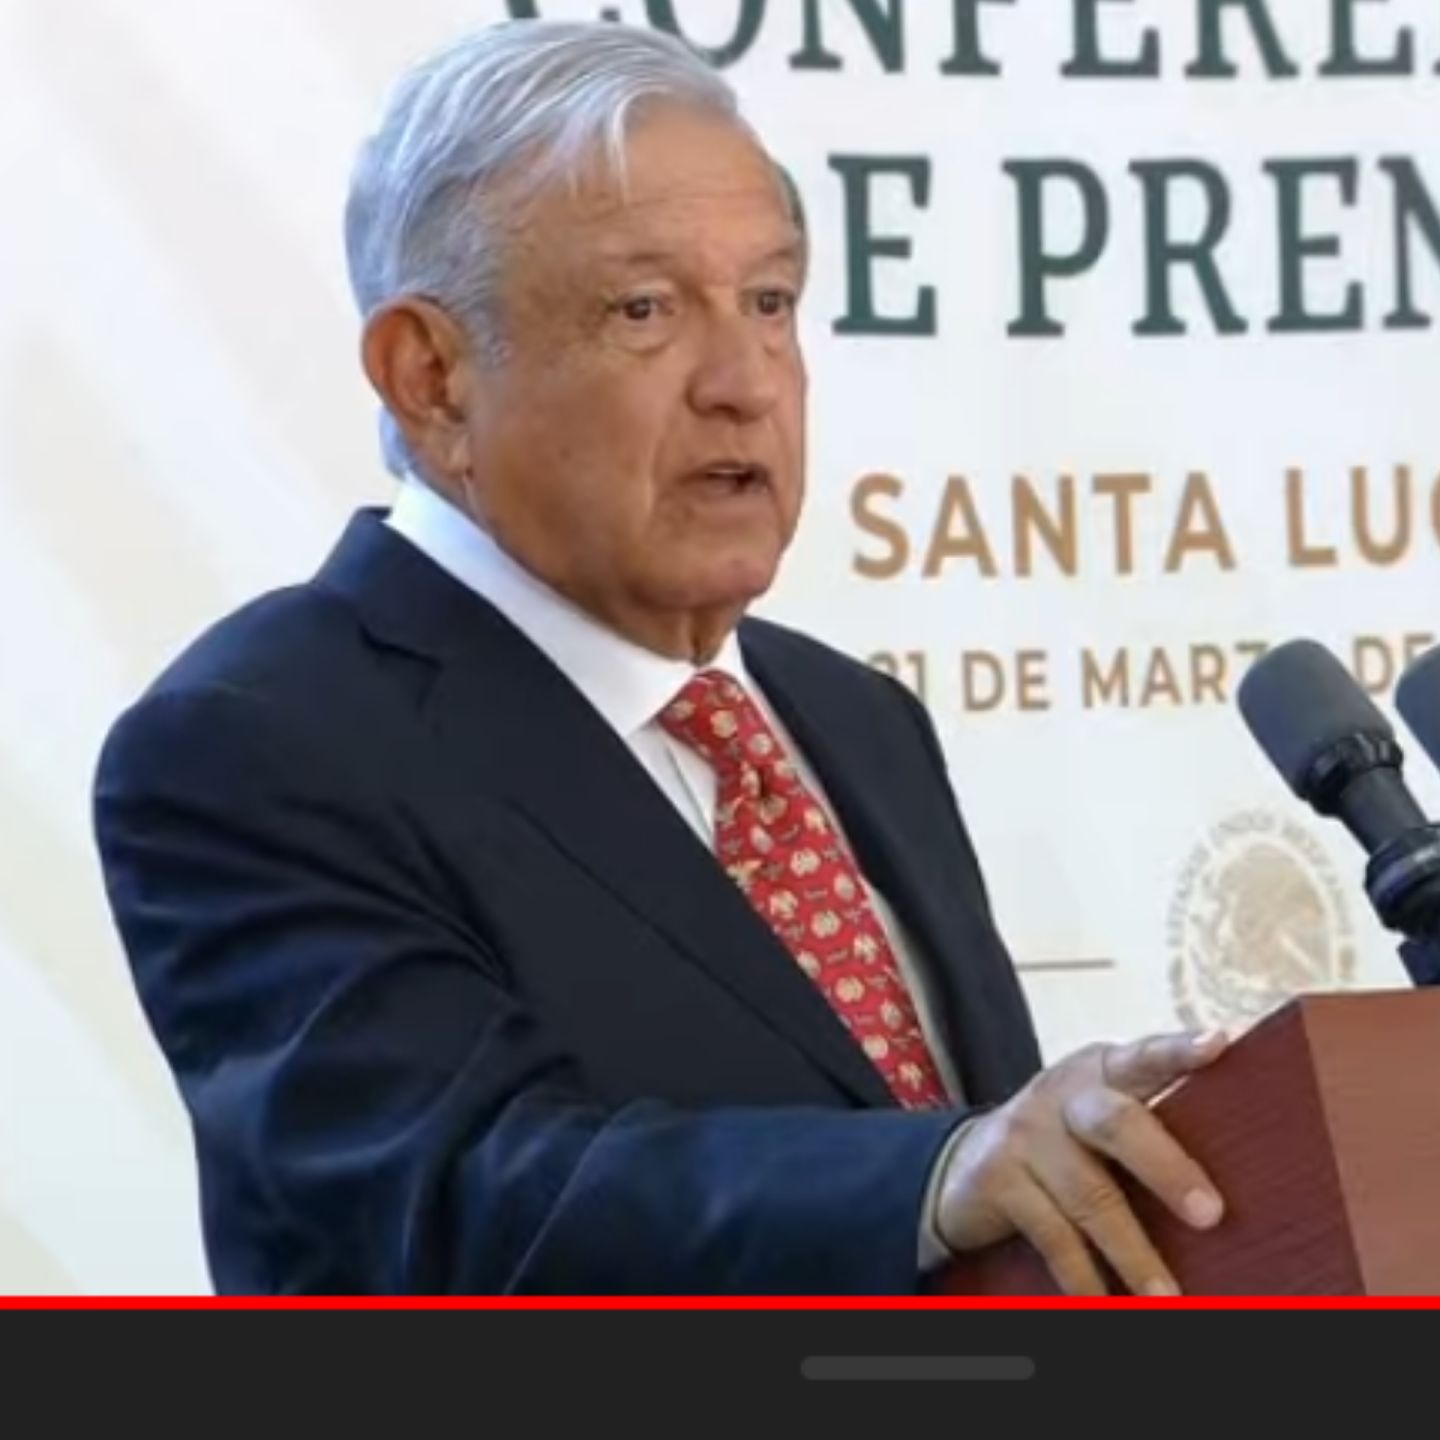 La entrada en operación del AIFA pone a México en la más alta tecnología Aeronáutica: Andrés Manuel López Obrador Presidente de México 